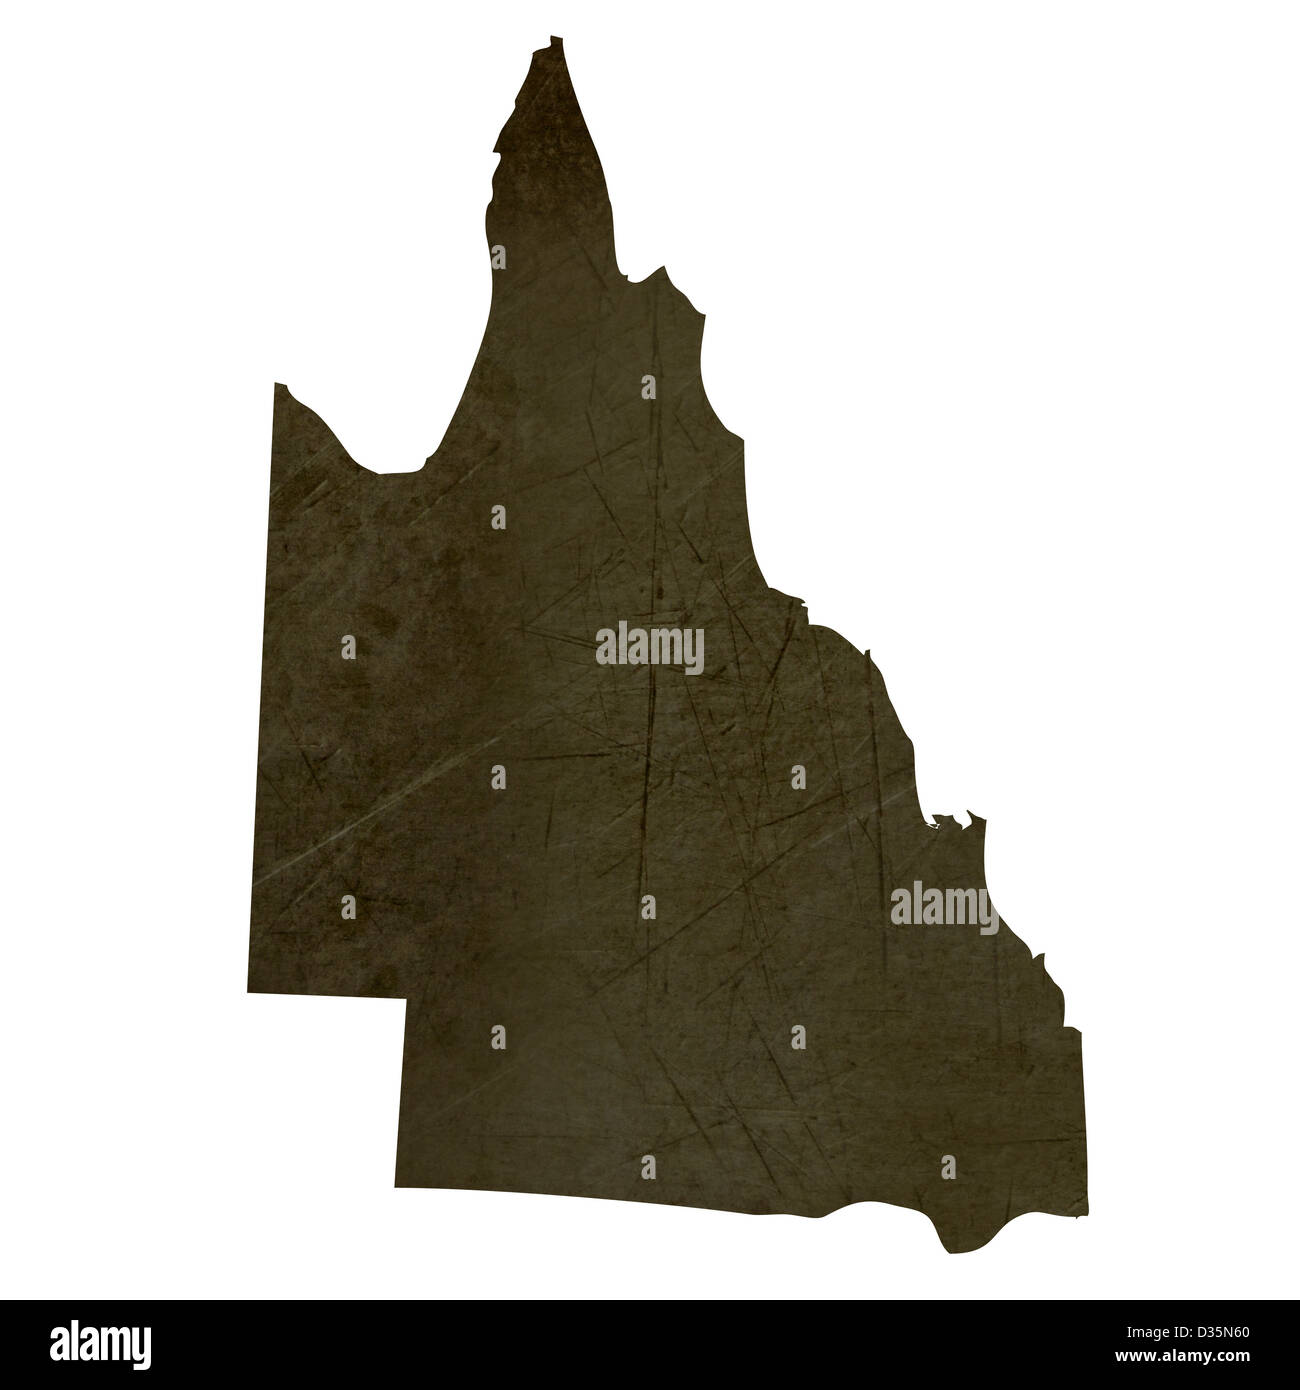 Dunkle Silhouette und strukturierte Karte der Provinz Queensland Australien isoliert auf weißem Hintergrund. Stockfoto